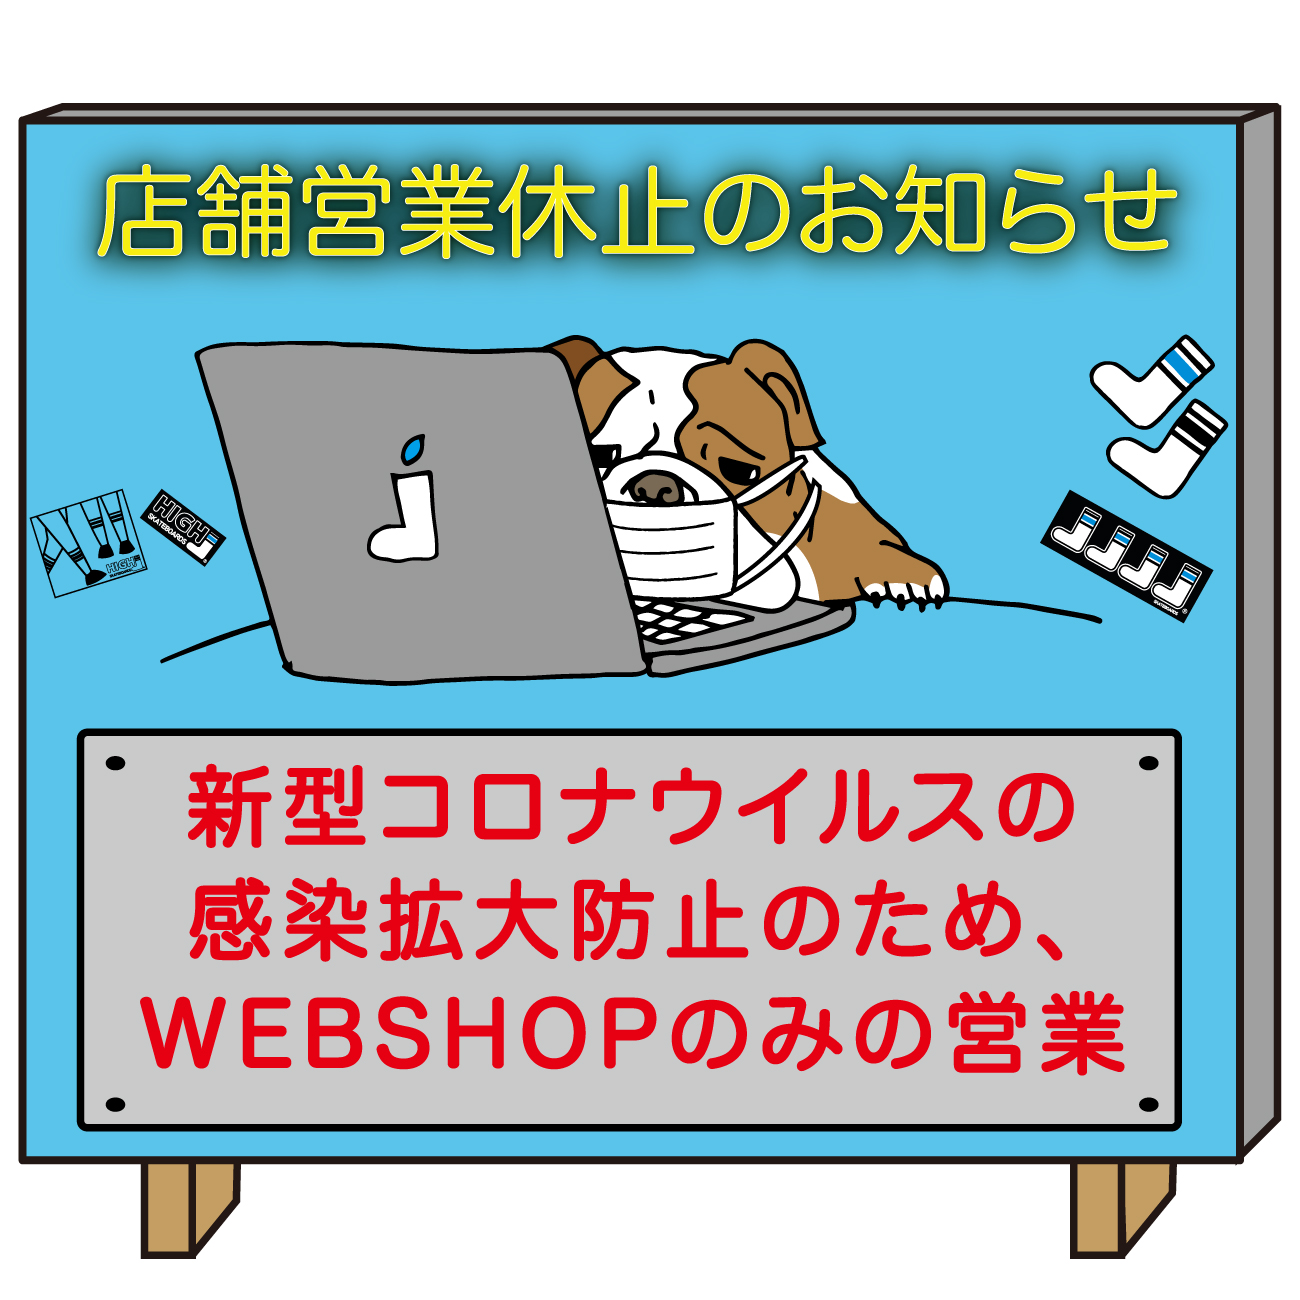 【WEBSHOPのみの営業】 店舗営業休止のお知らせ